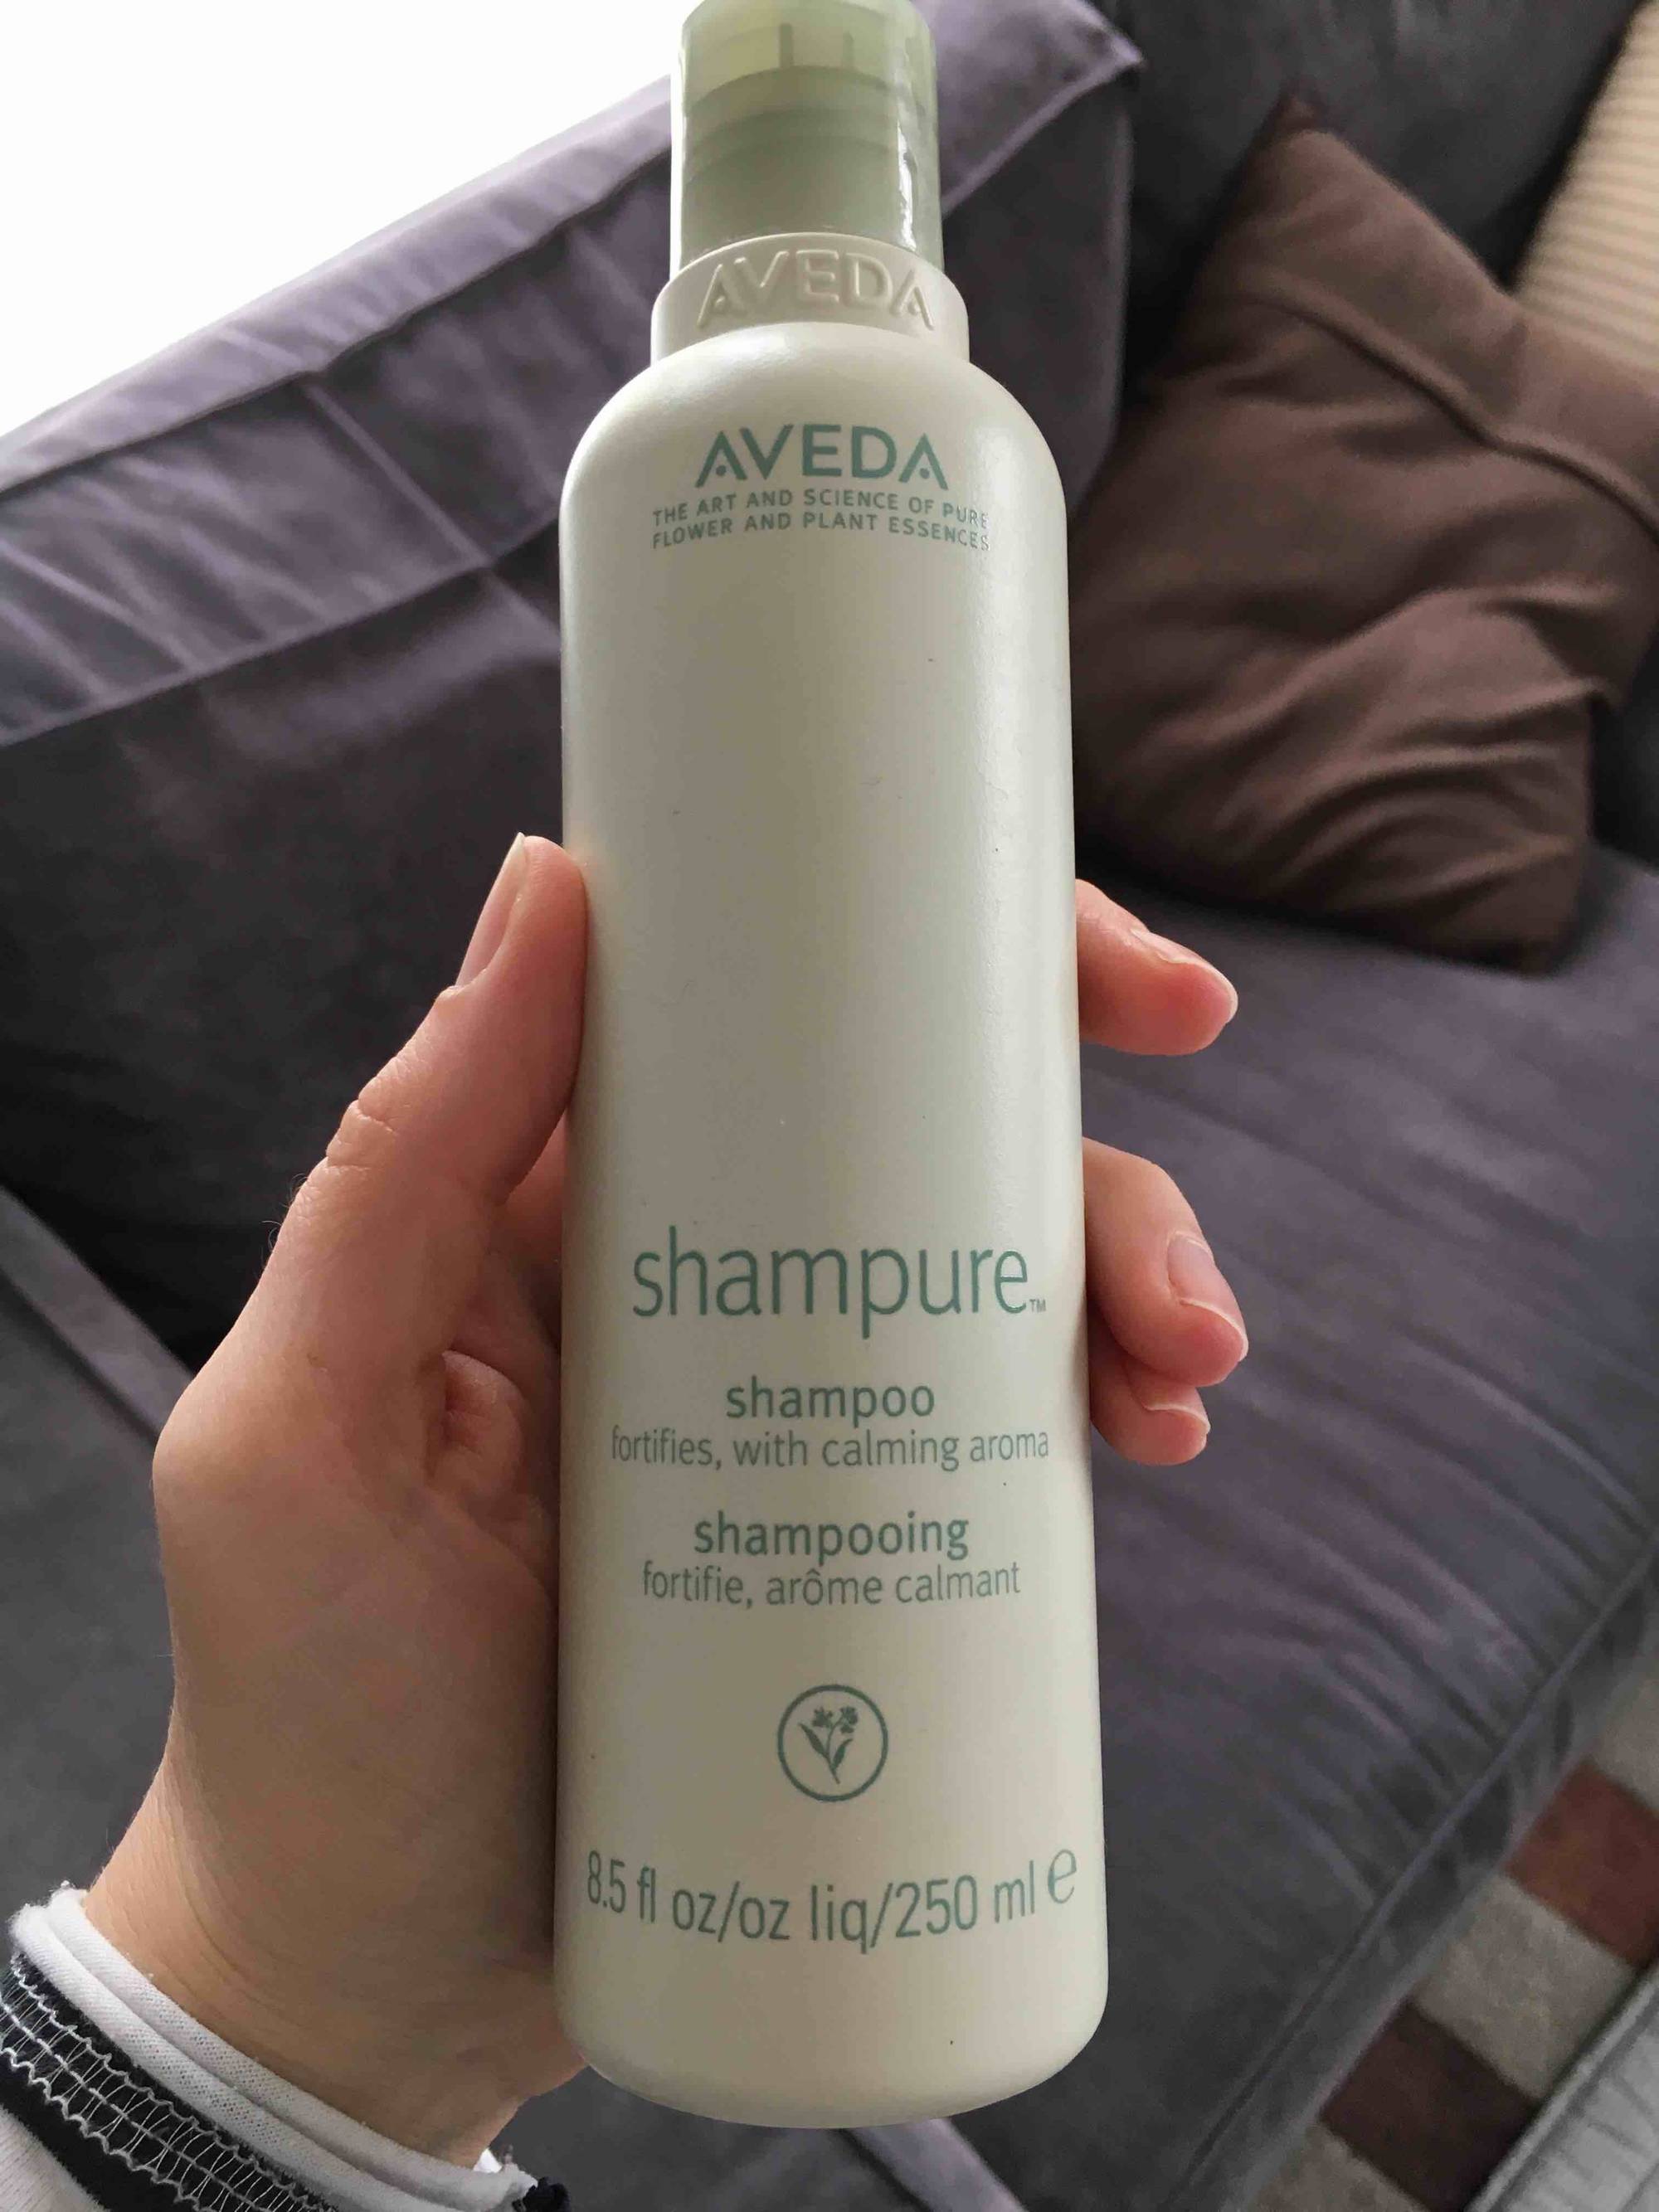 AVEDA - Shampure - Shampooing - Forfitie, arôme calmant